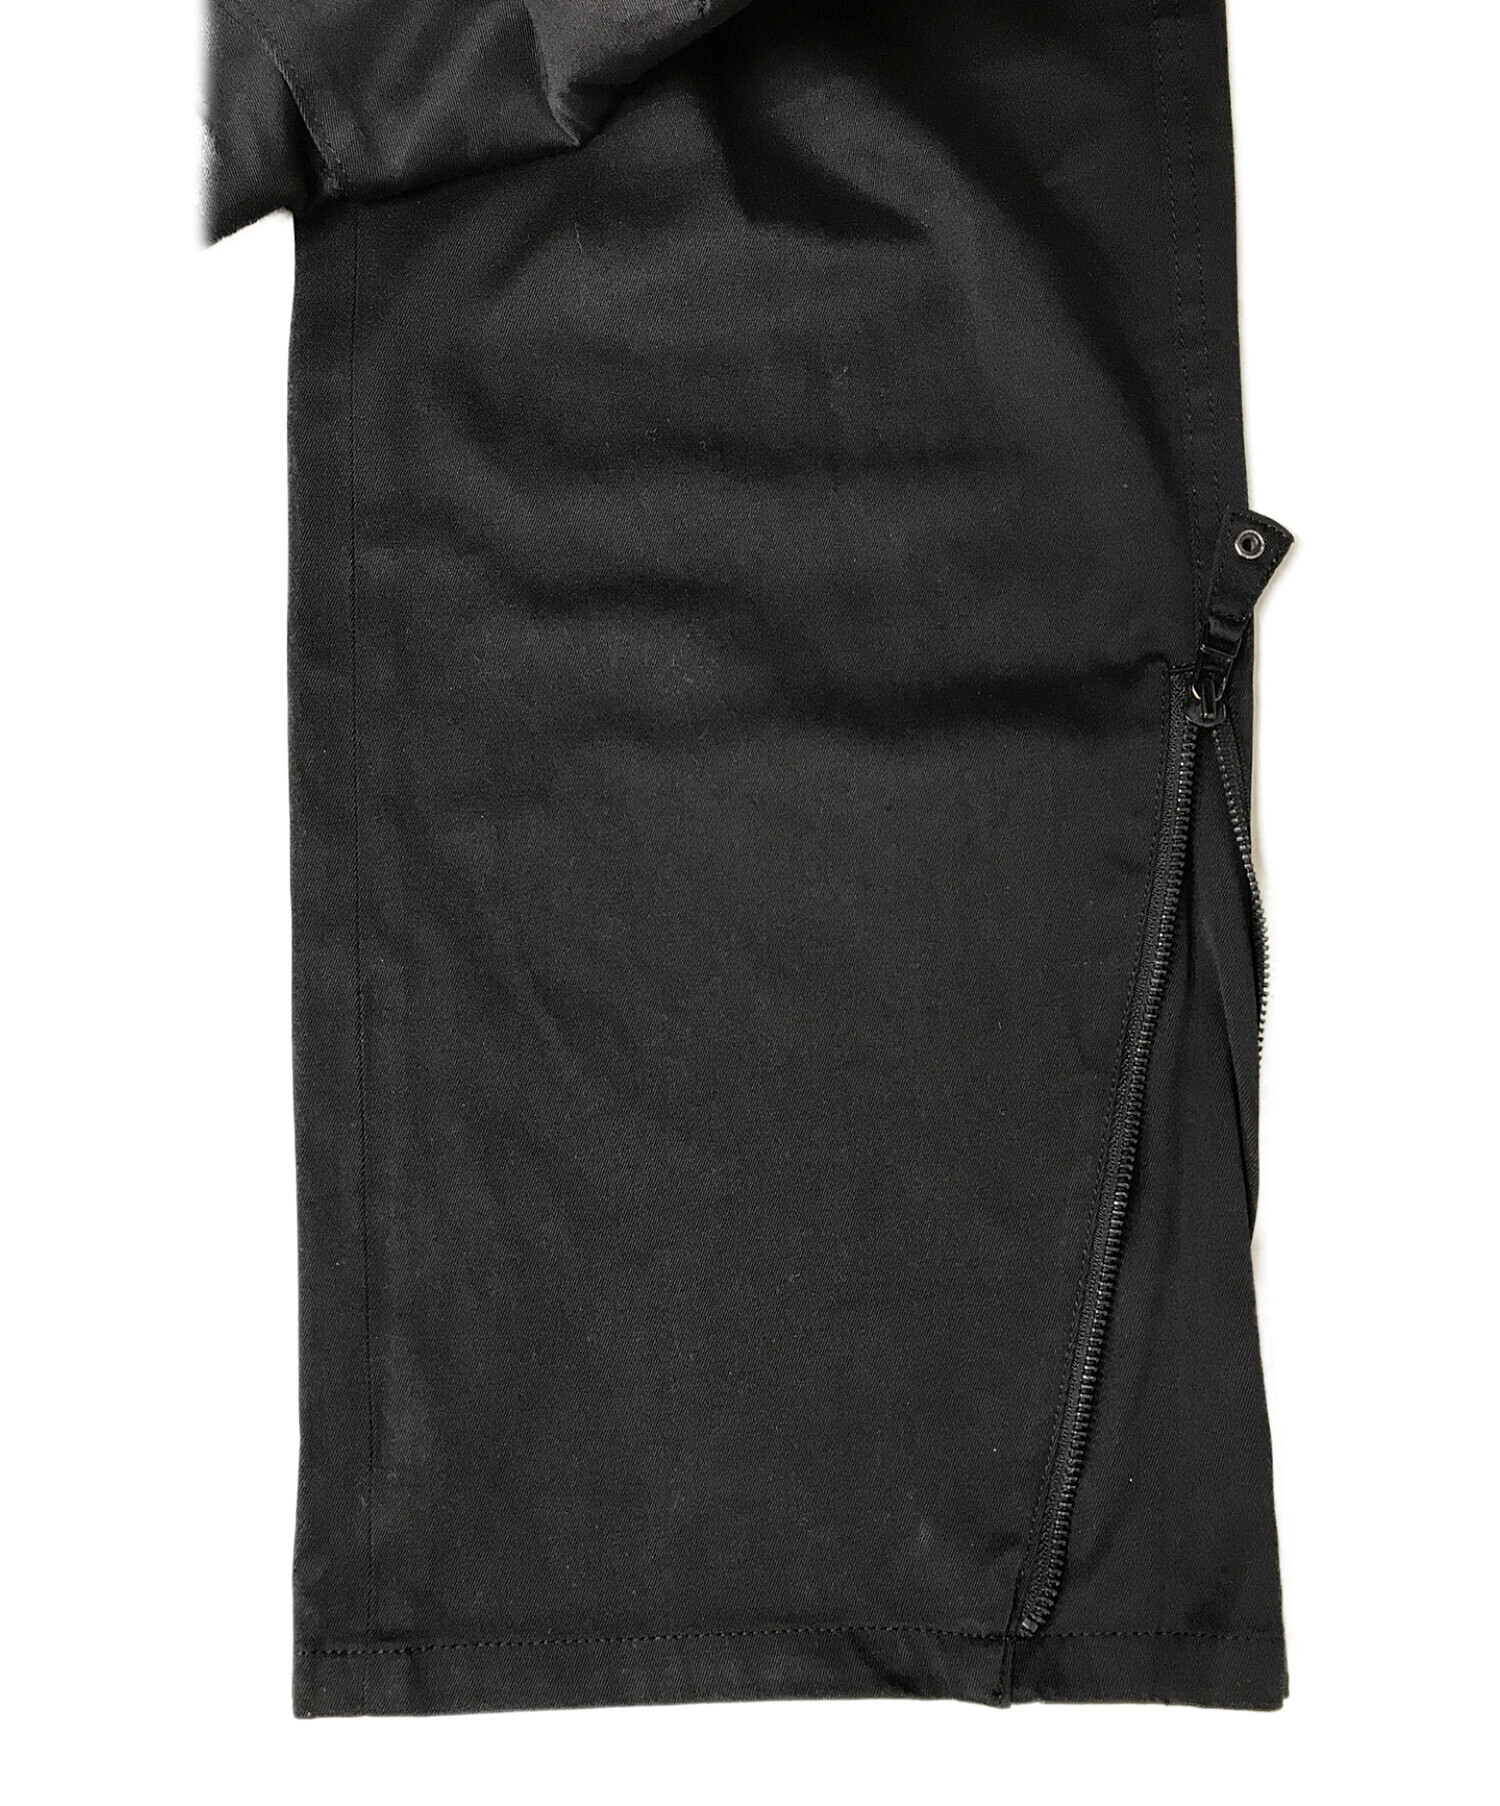 Jean Paul Gaultier homme (ジャンポールゴルチェオム) カーゴパンツ ブラック サイズ:48